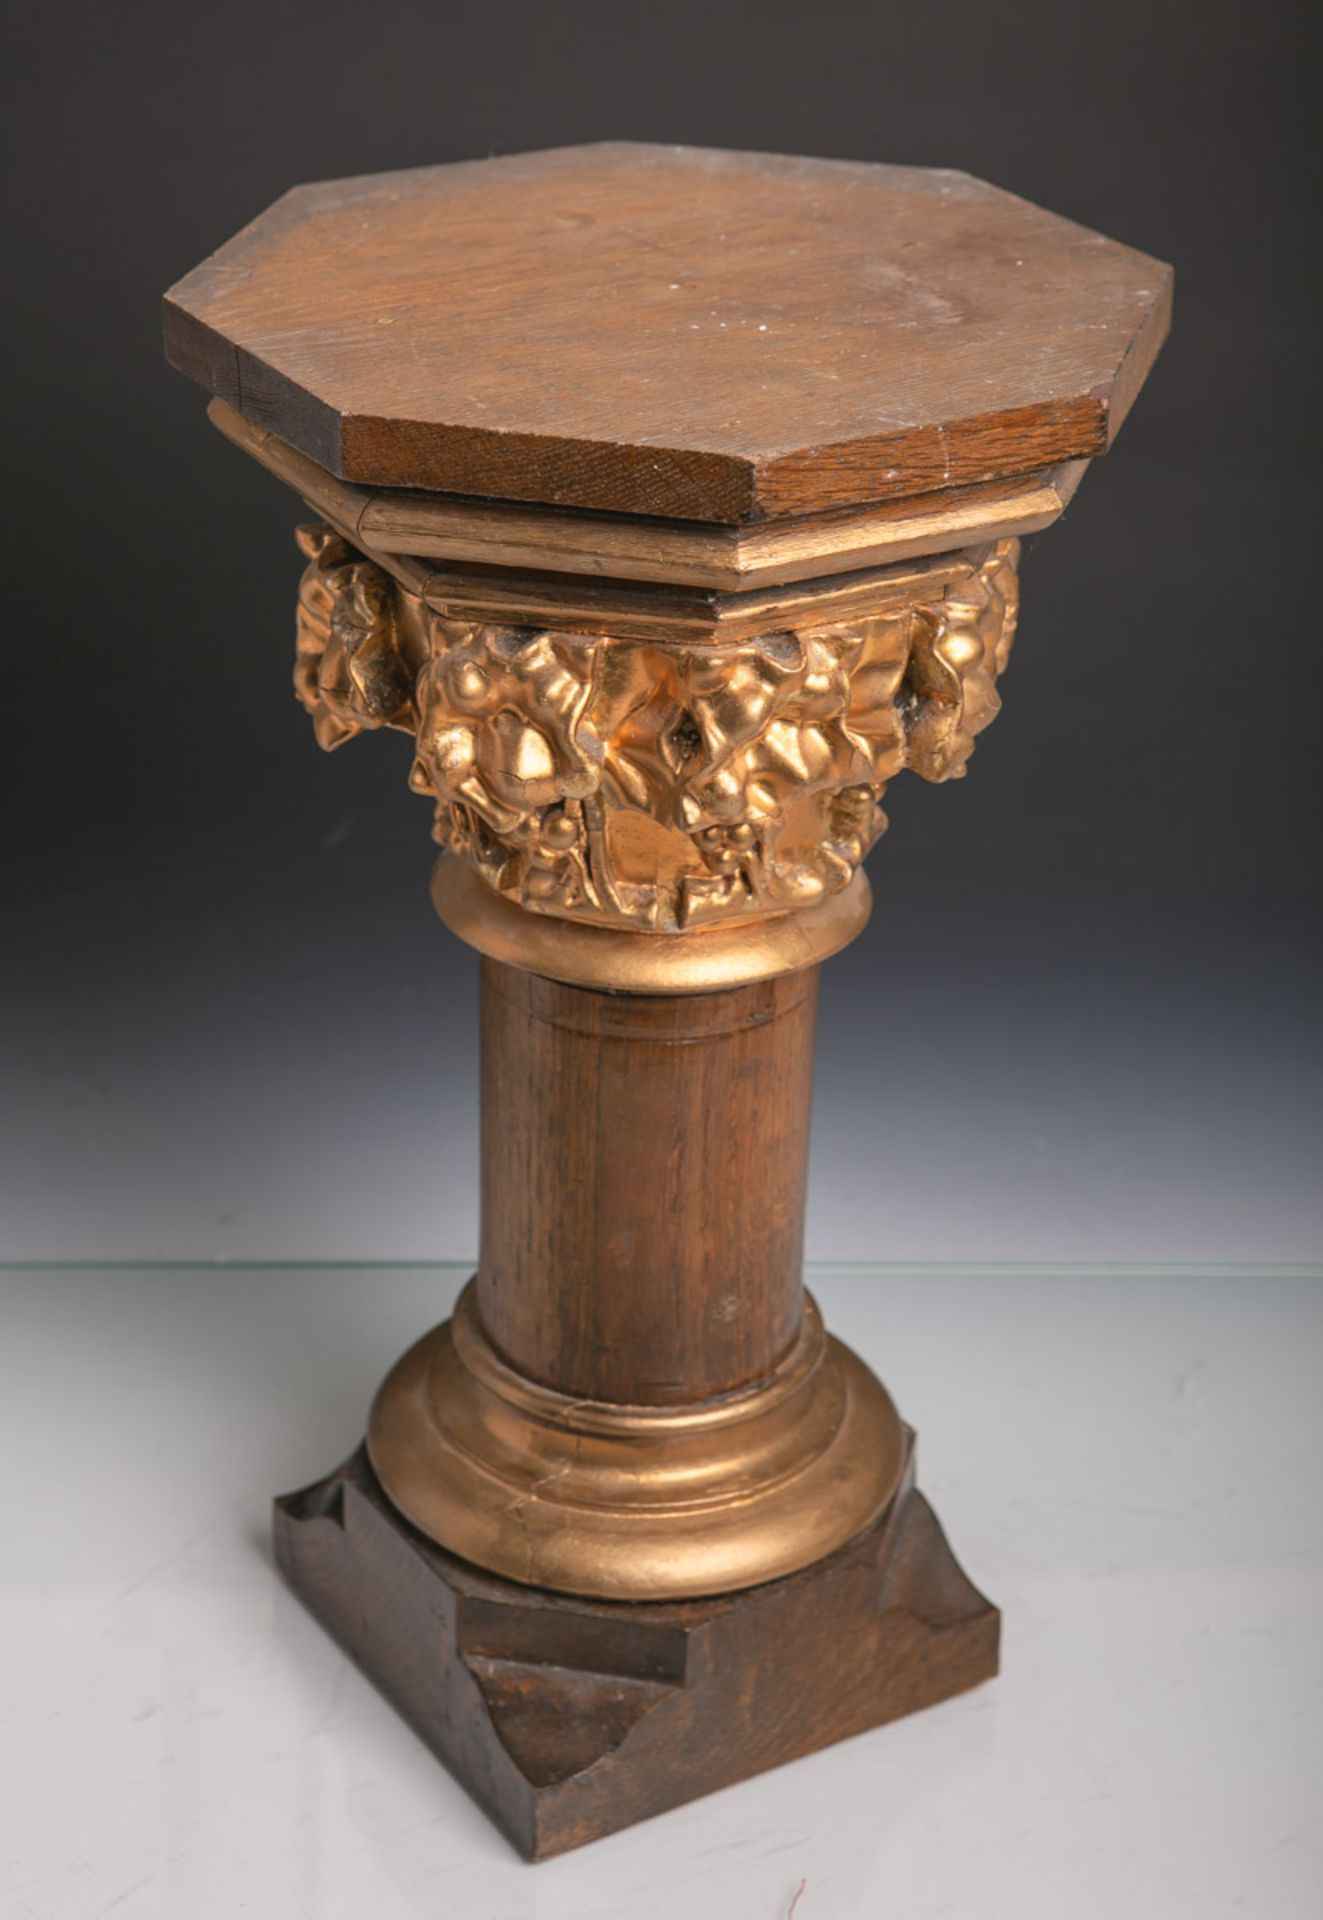 Konsole in Form einer Säule (19. Jahrhundert), Eichenholz, teils geschnitzt u. vergoldet,